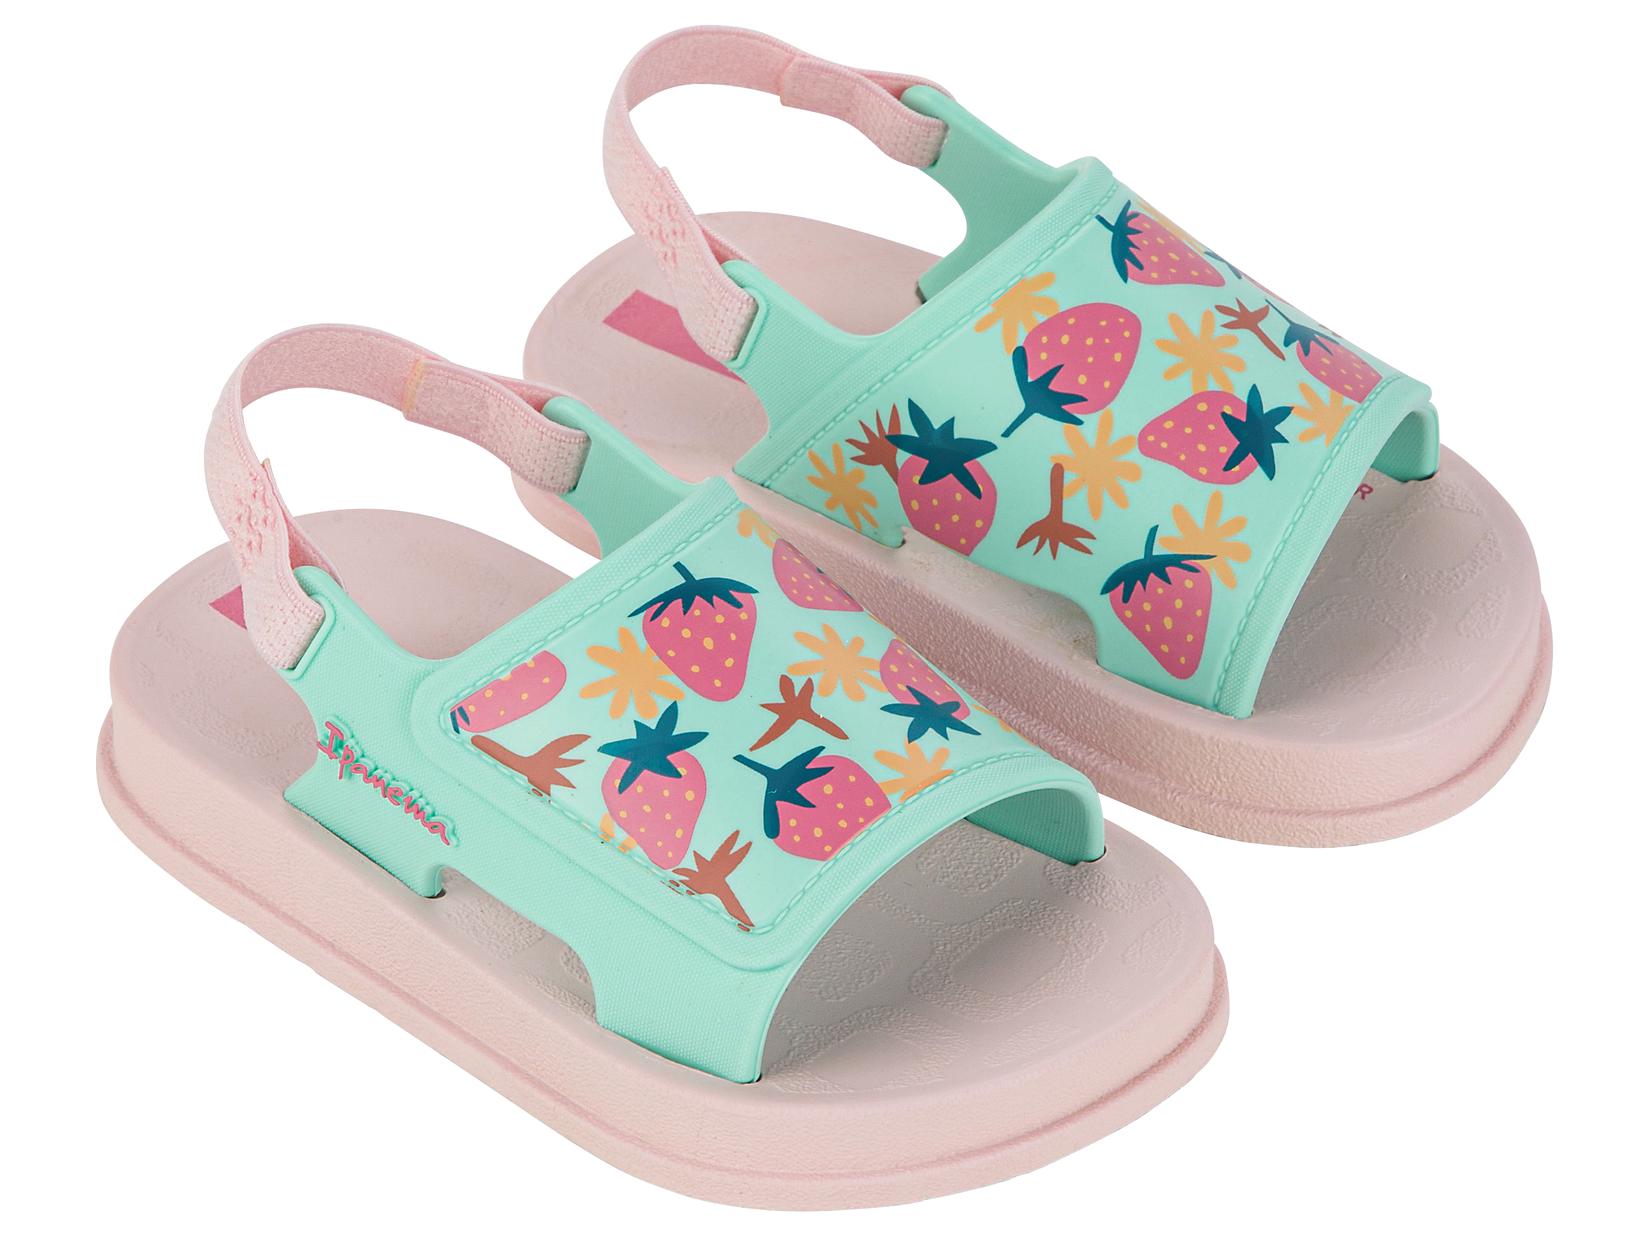 Selected image for Ipanema Sandale za devojčice 83545, Soft Baby, Plavo-roze